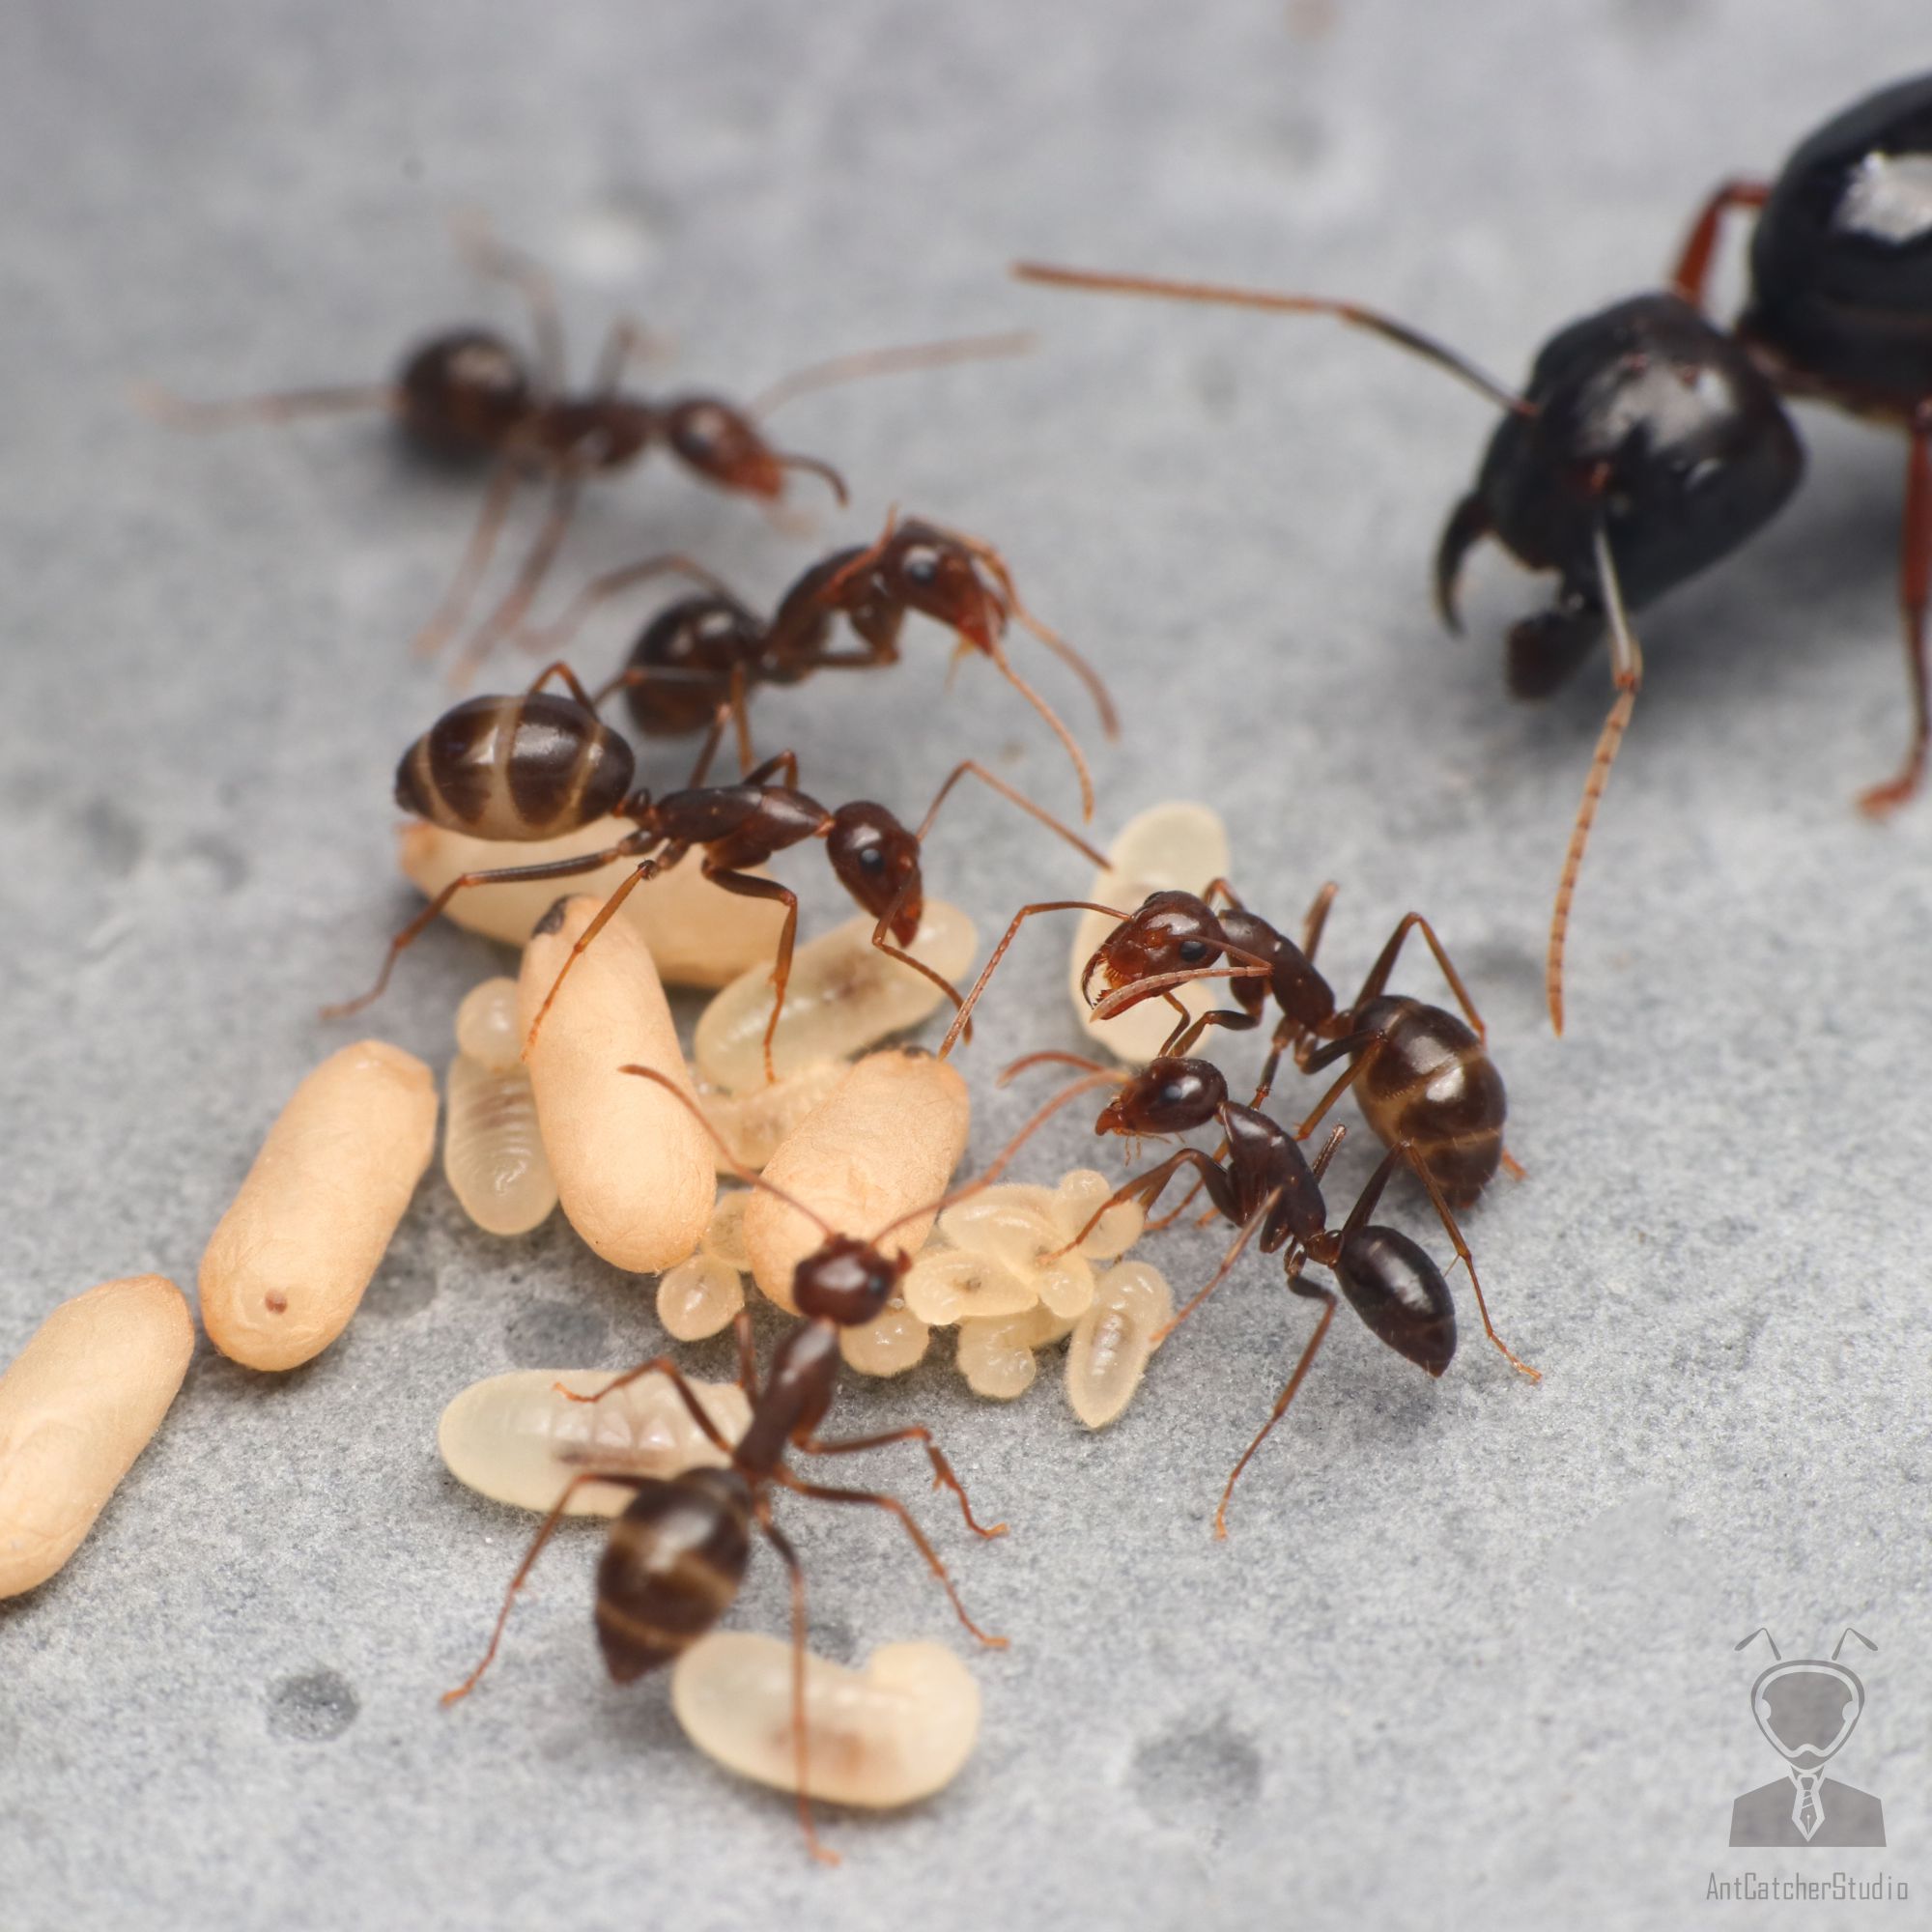 平均工蟻體型較大黑巨山蟻大